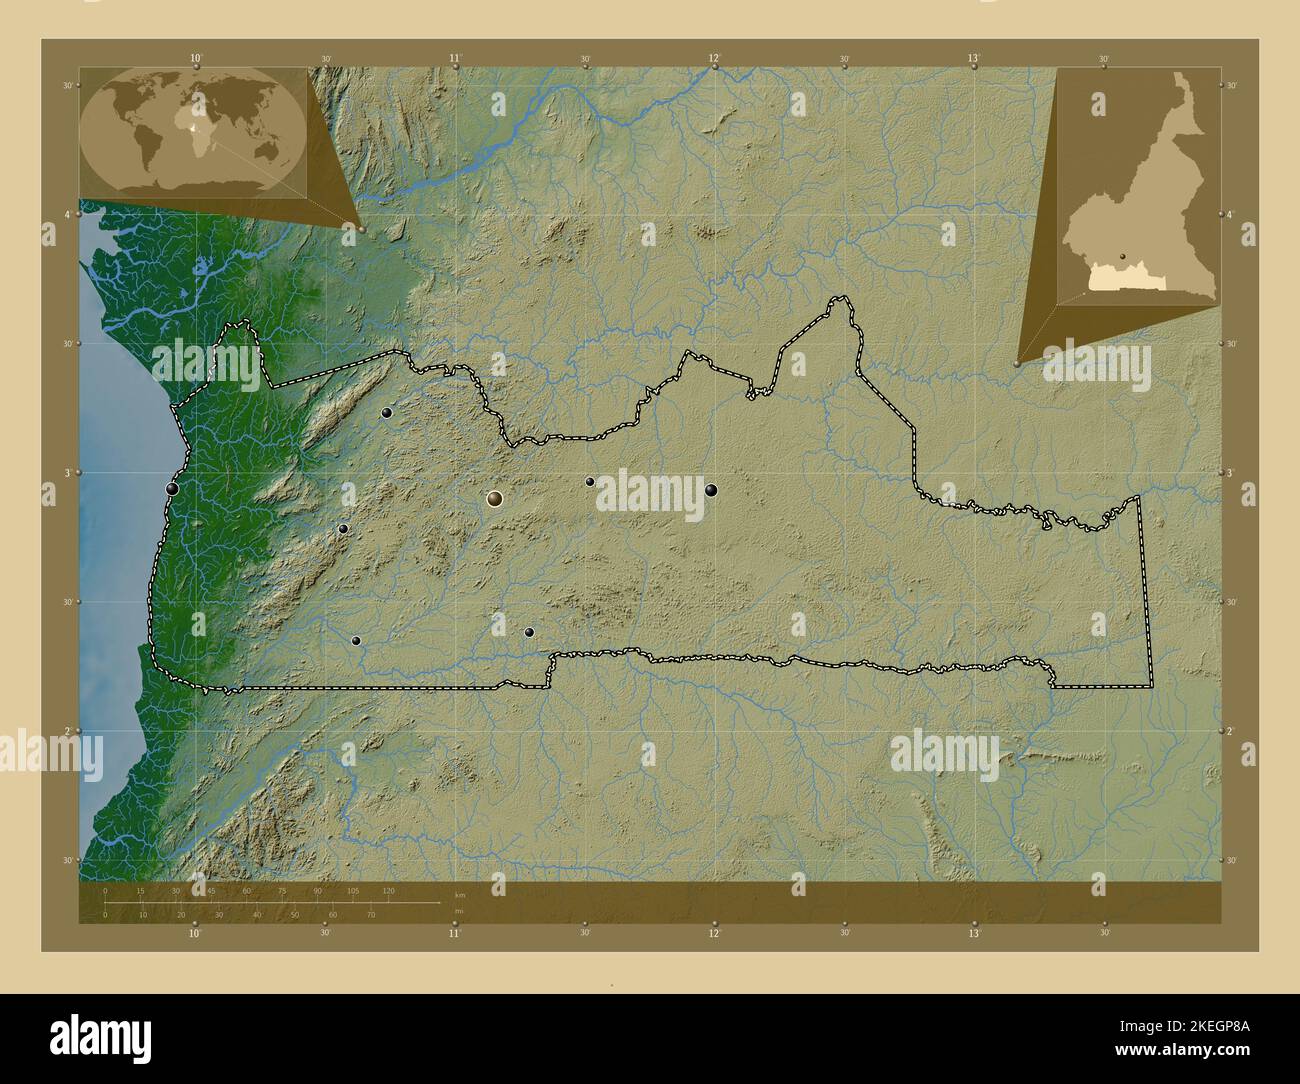 Sud, région du Cameroun. Carte d'altitude en couleur avec lacs et rivières. Lieux des principales villes de la région. Cartes d'emplacement auxiliaire d'angle Banque D'Images